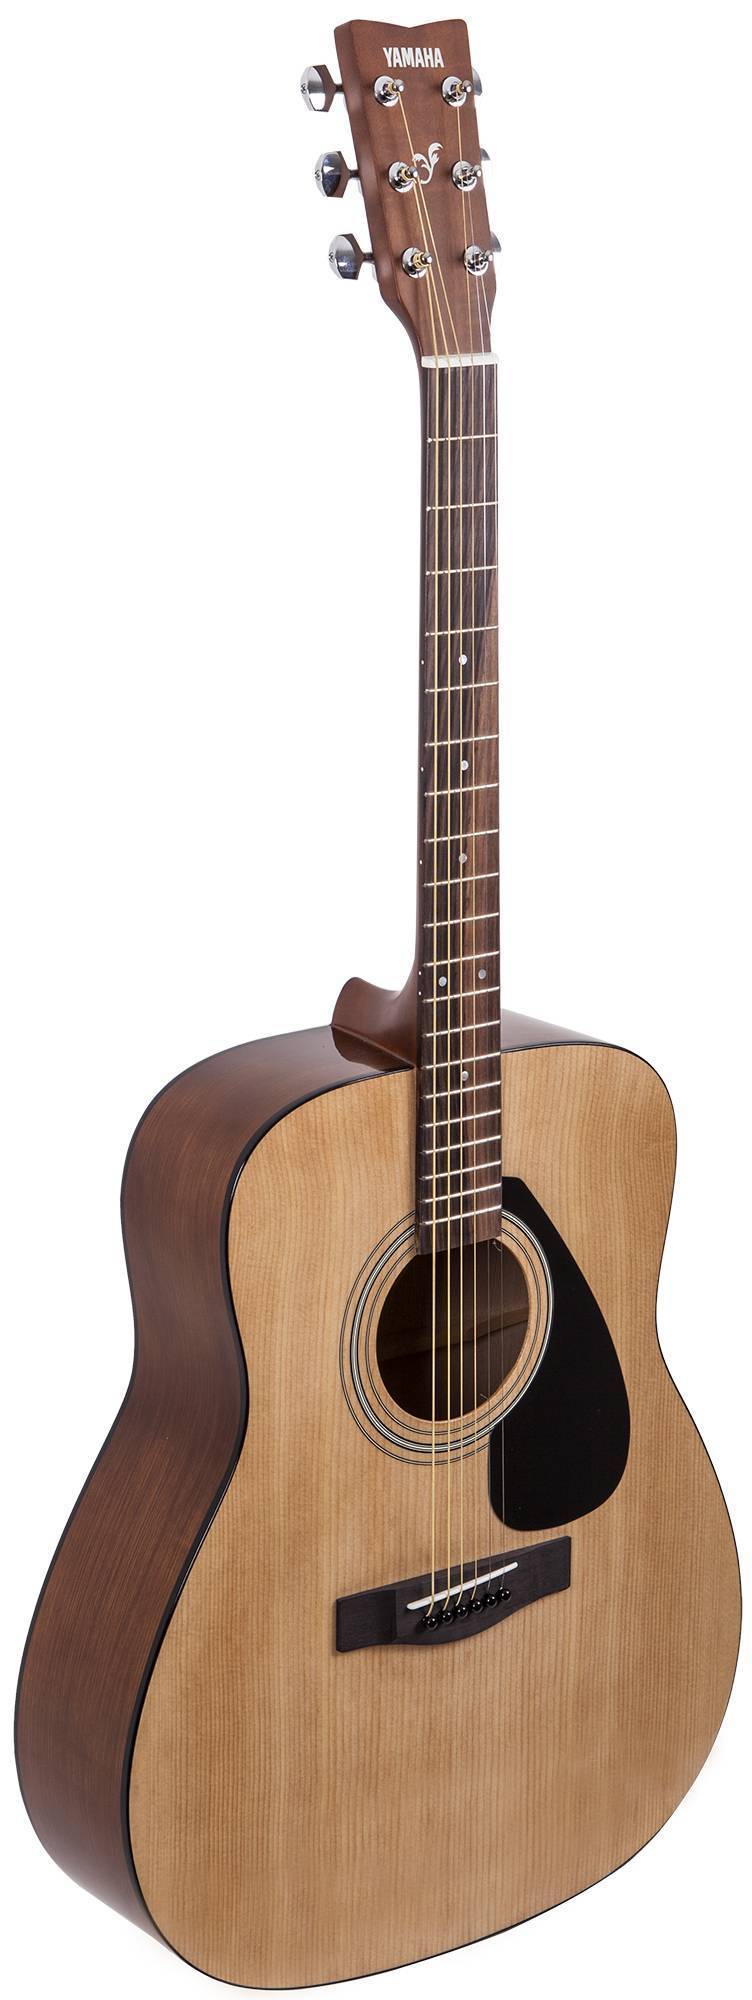 Акустическая гитара Yamaha F310 вид сзади и спереди